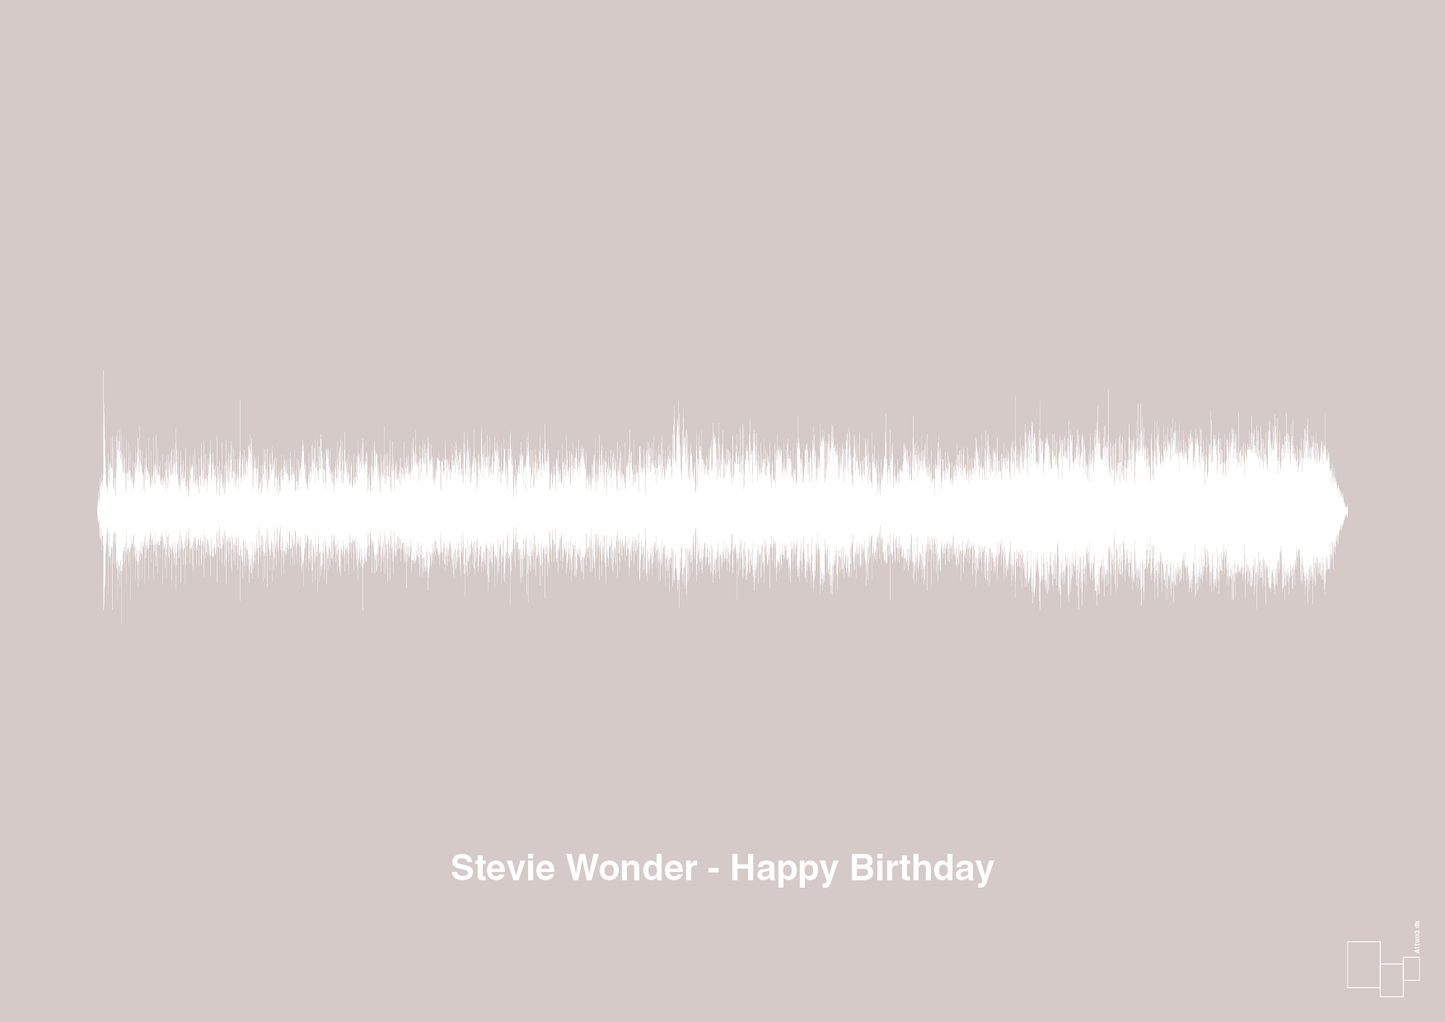 stevie wonder - happy birthday - Plakat med Musik i Broken Beige